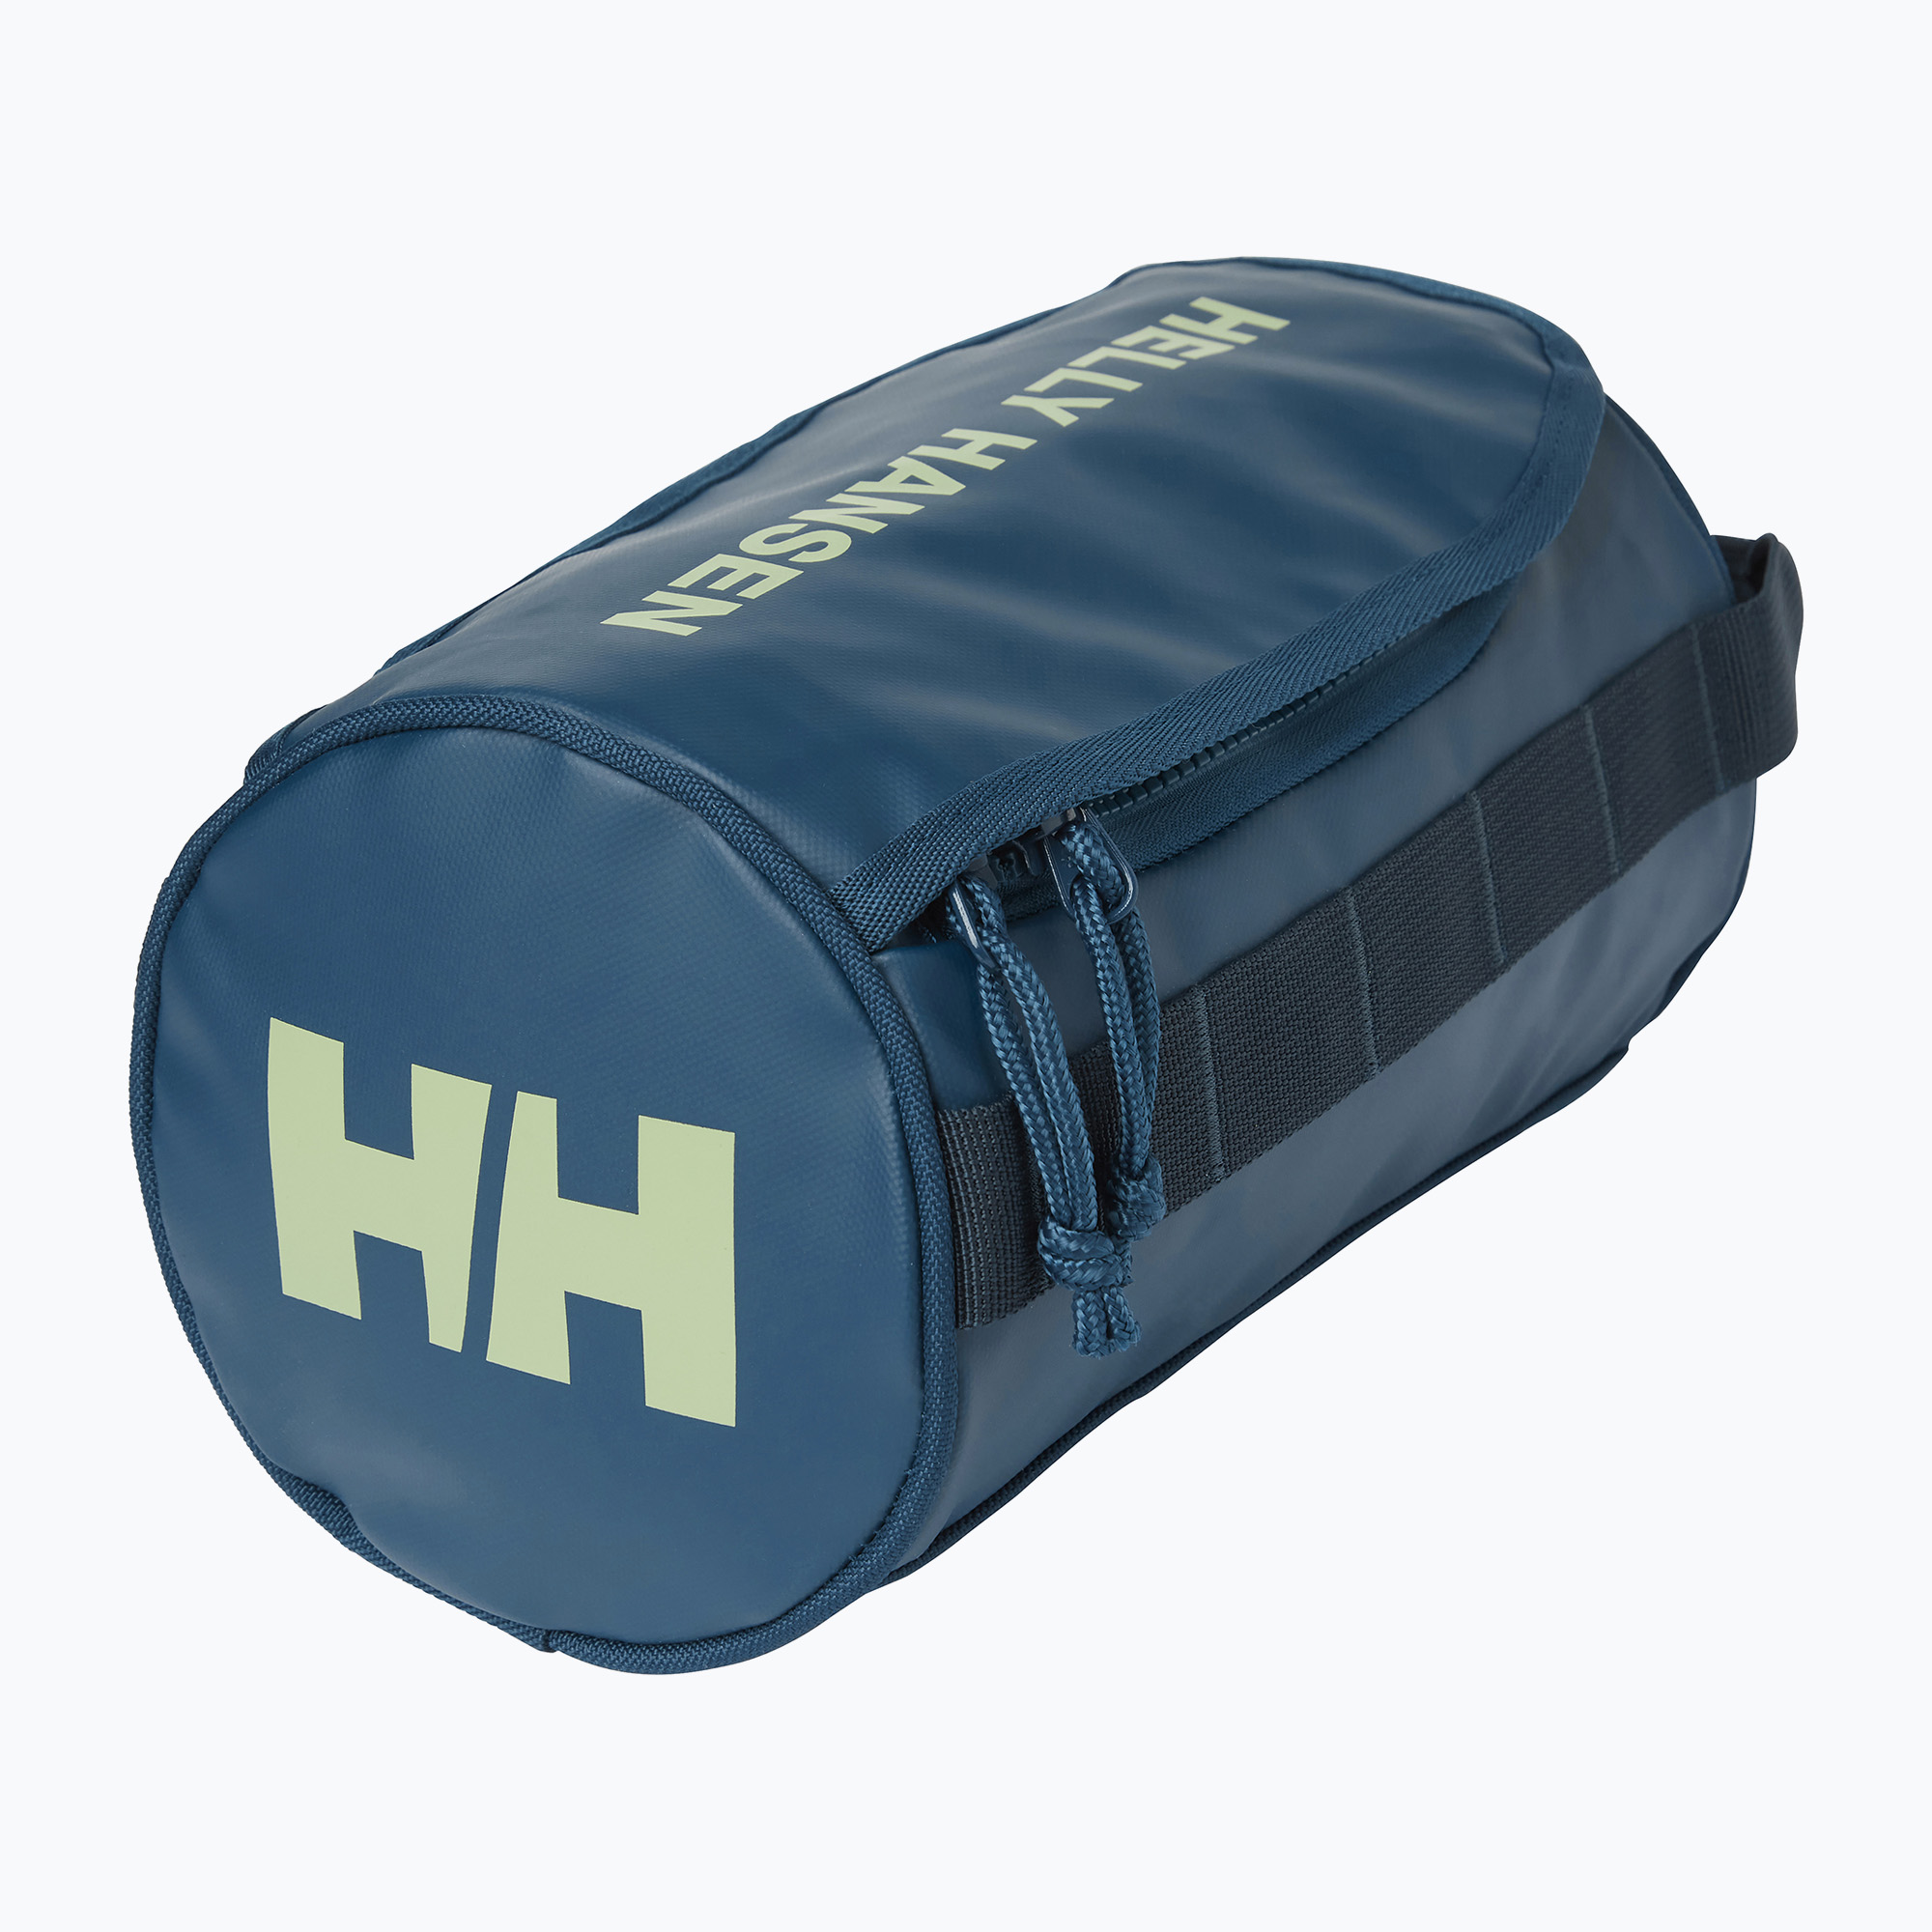 Helly Hansen Hh Wash Bag 2 geantă de toaletă pentru scufundări adânci